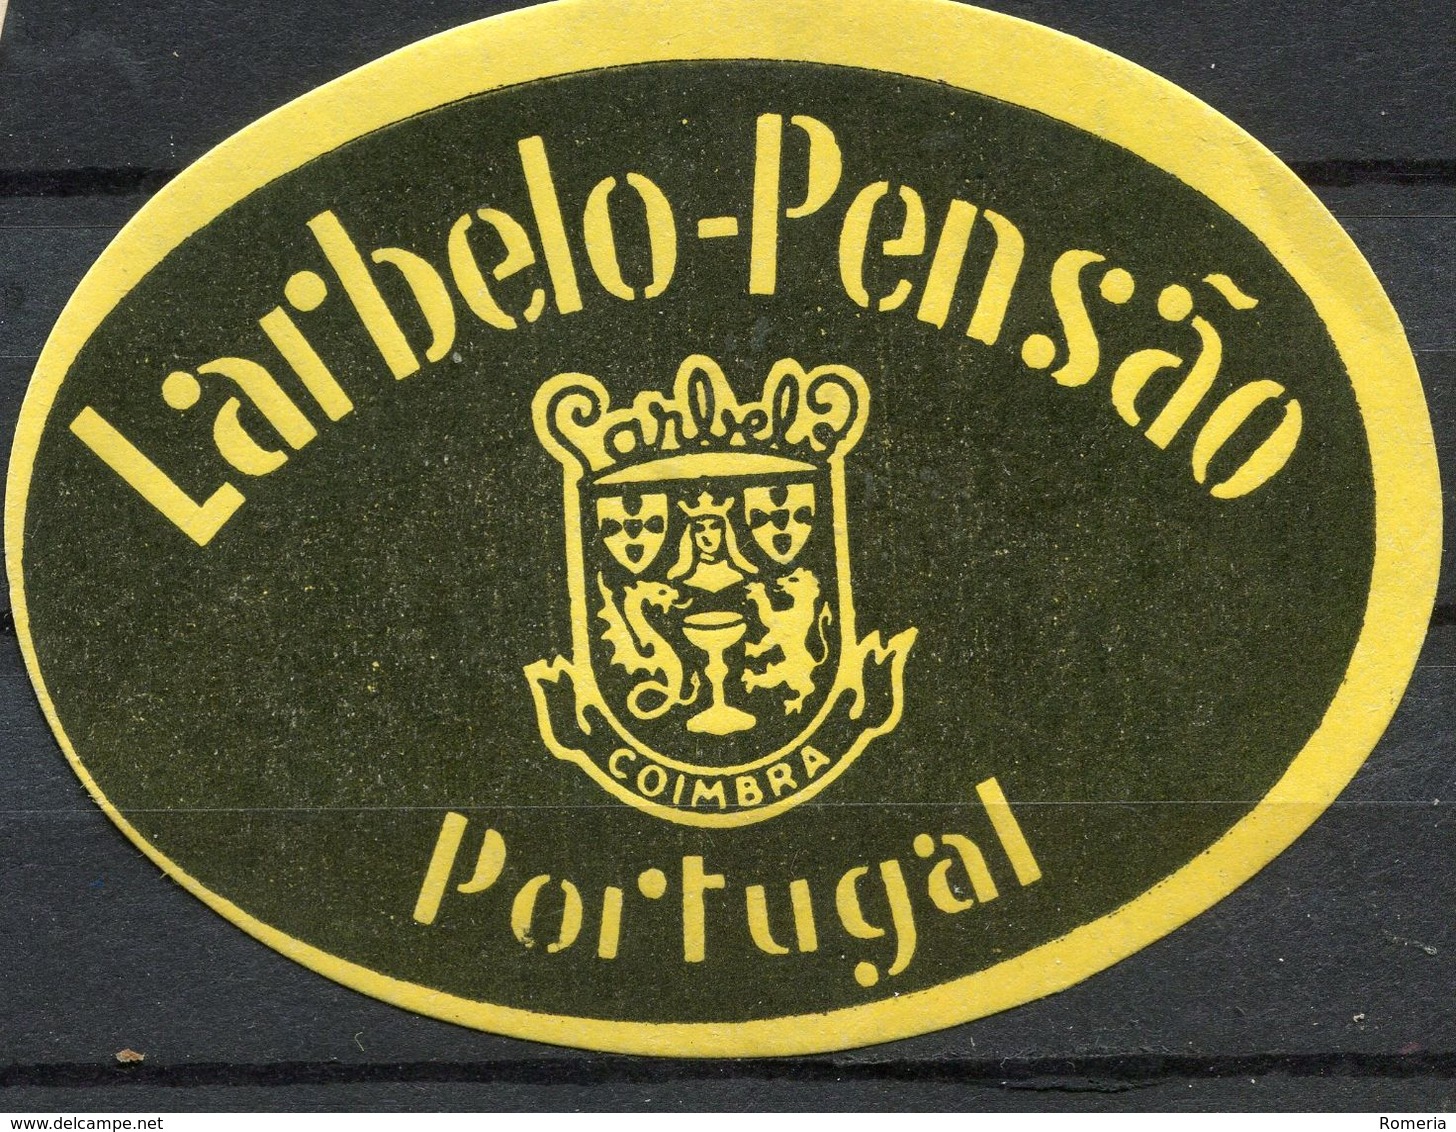 1859 - Portugal - Coimbra - Etiquette Hôtel Larbelo Pensáo - Etiquettes D'hotels